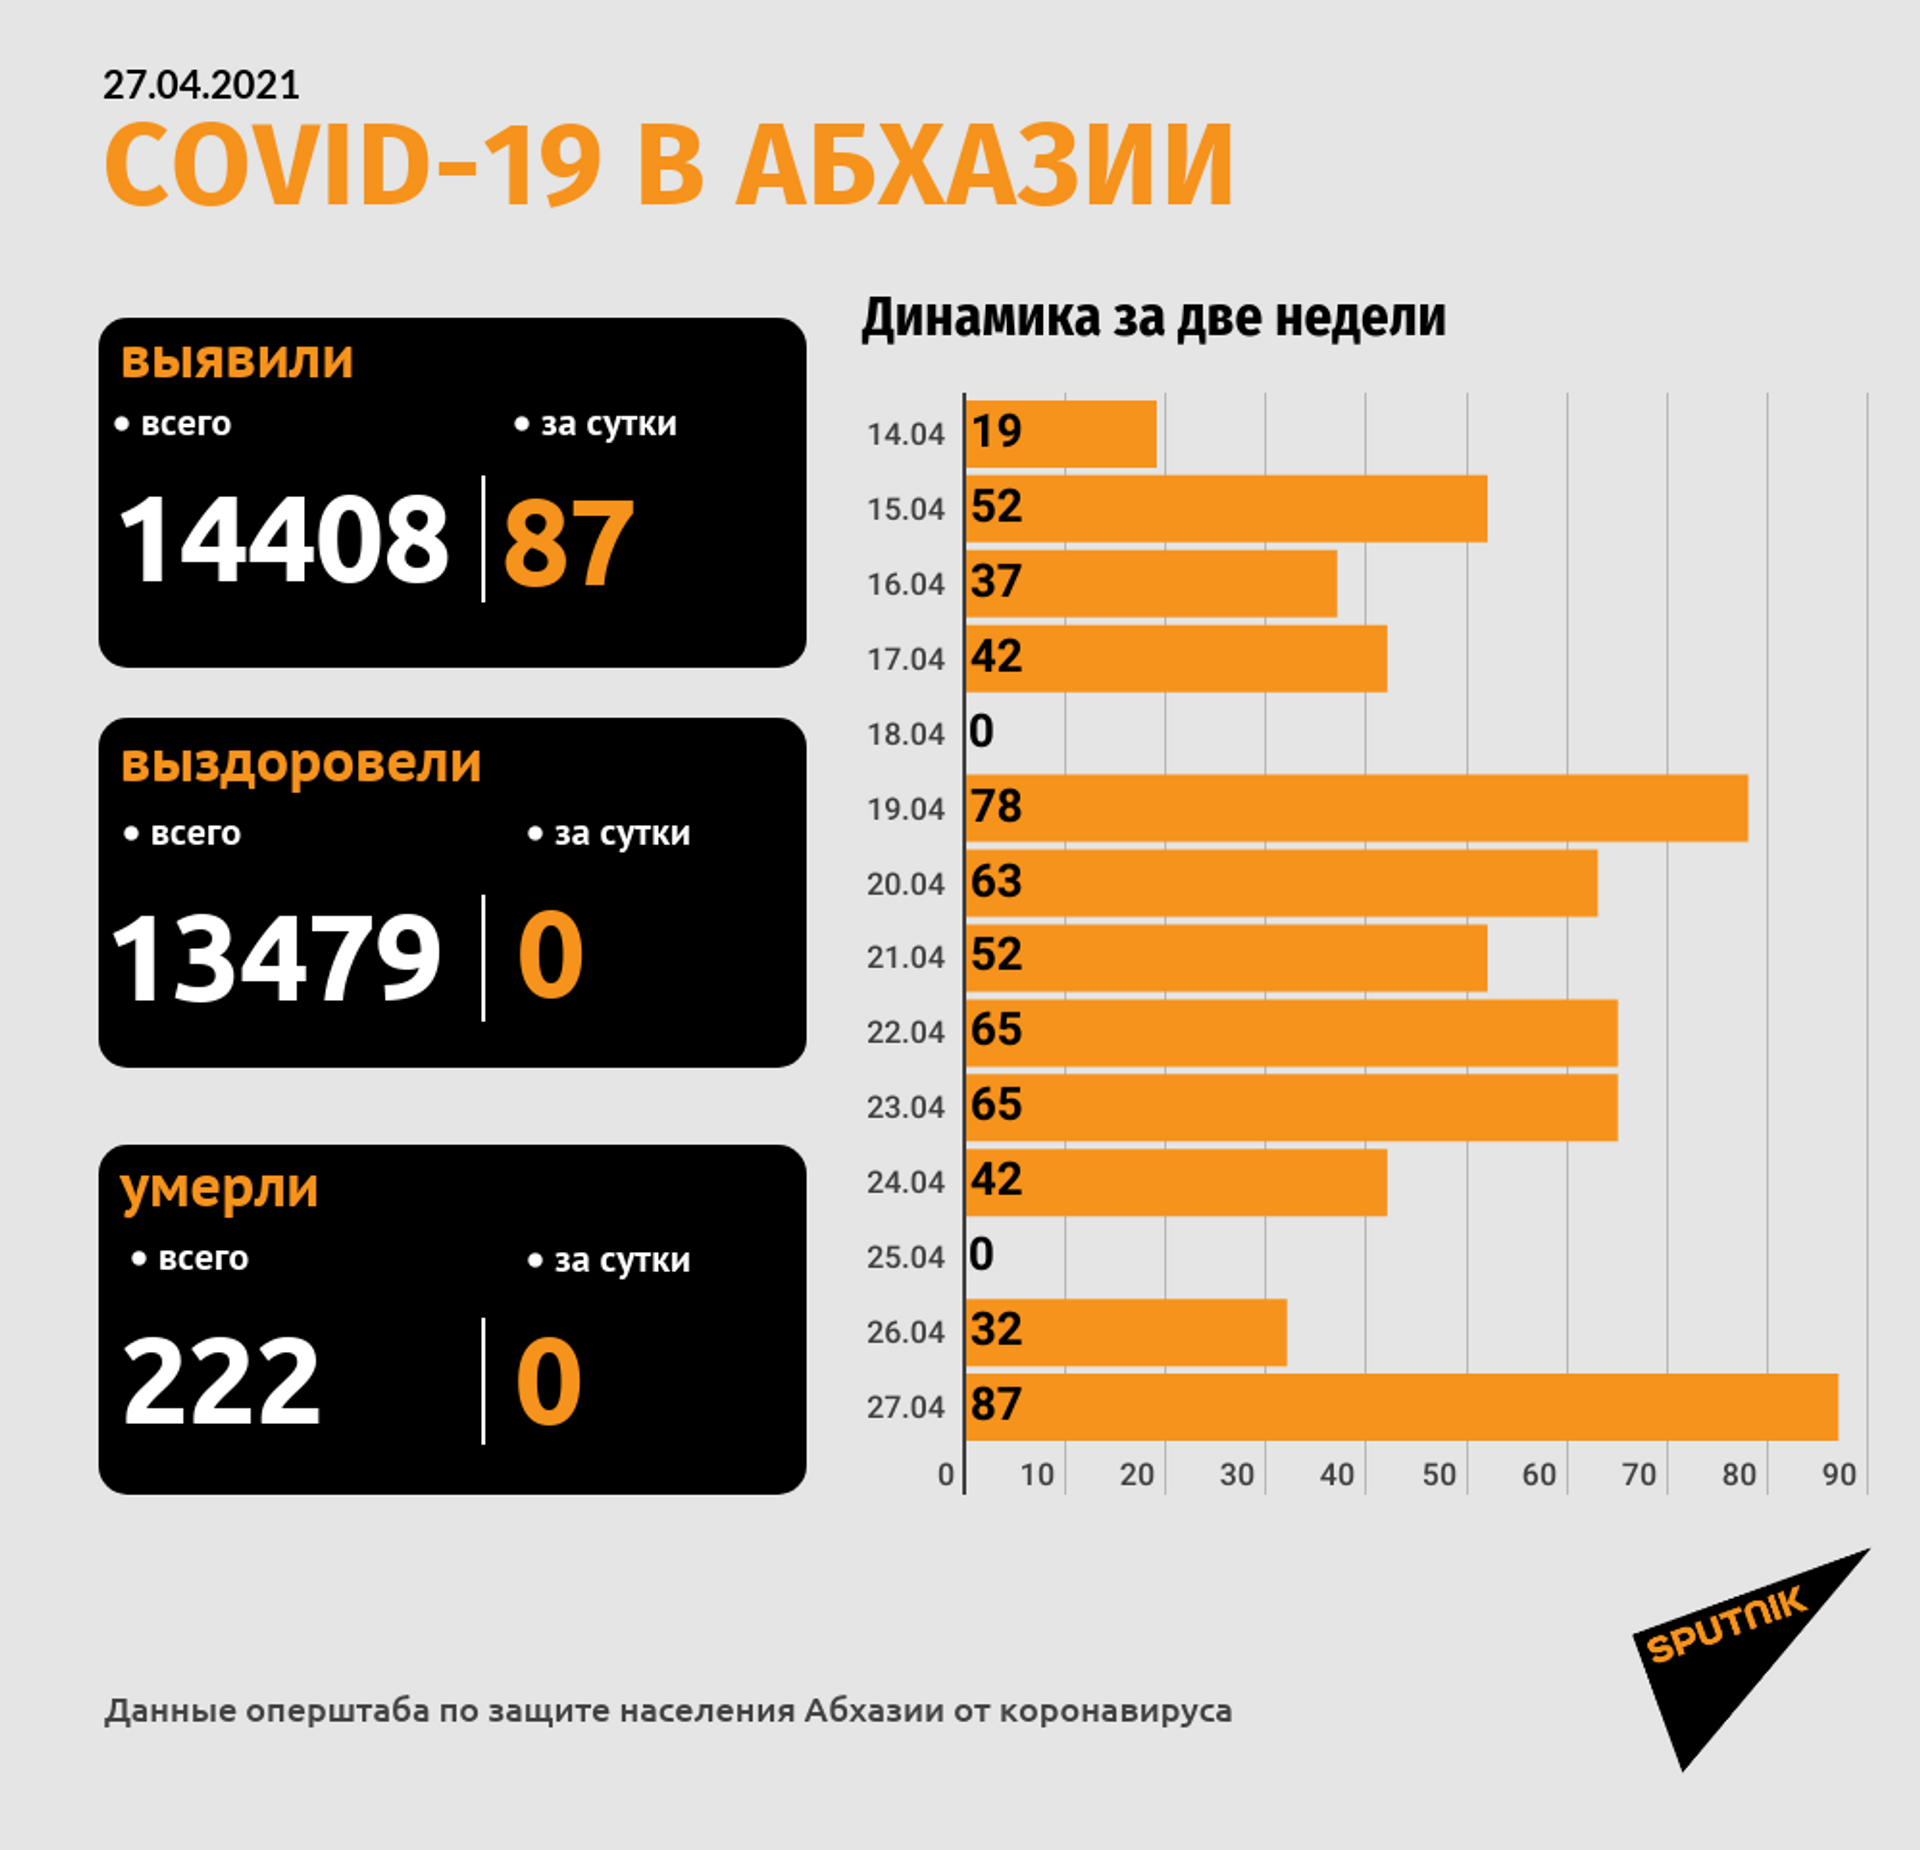 Диагноз COVID-19 зафиксирован у 87 человек за сутки в Абхазии - Sputnik Абхазия, 1920, 27.04.2021